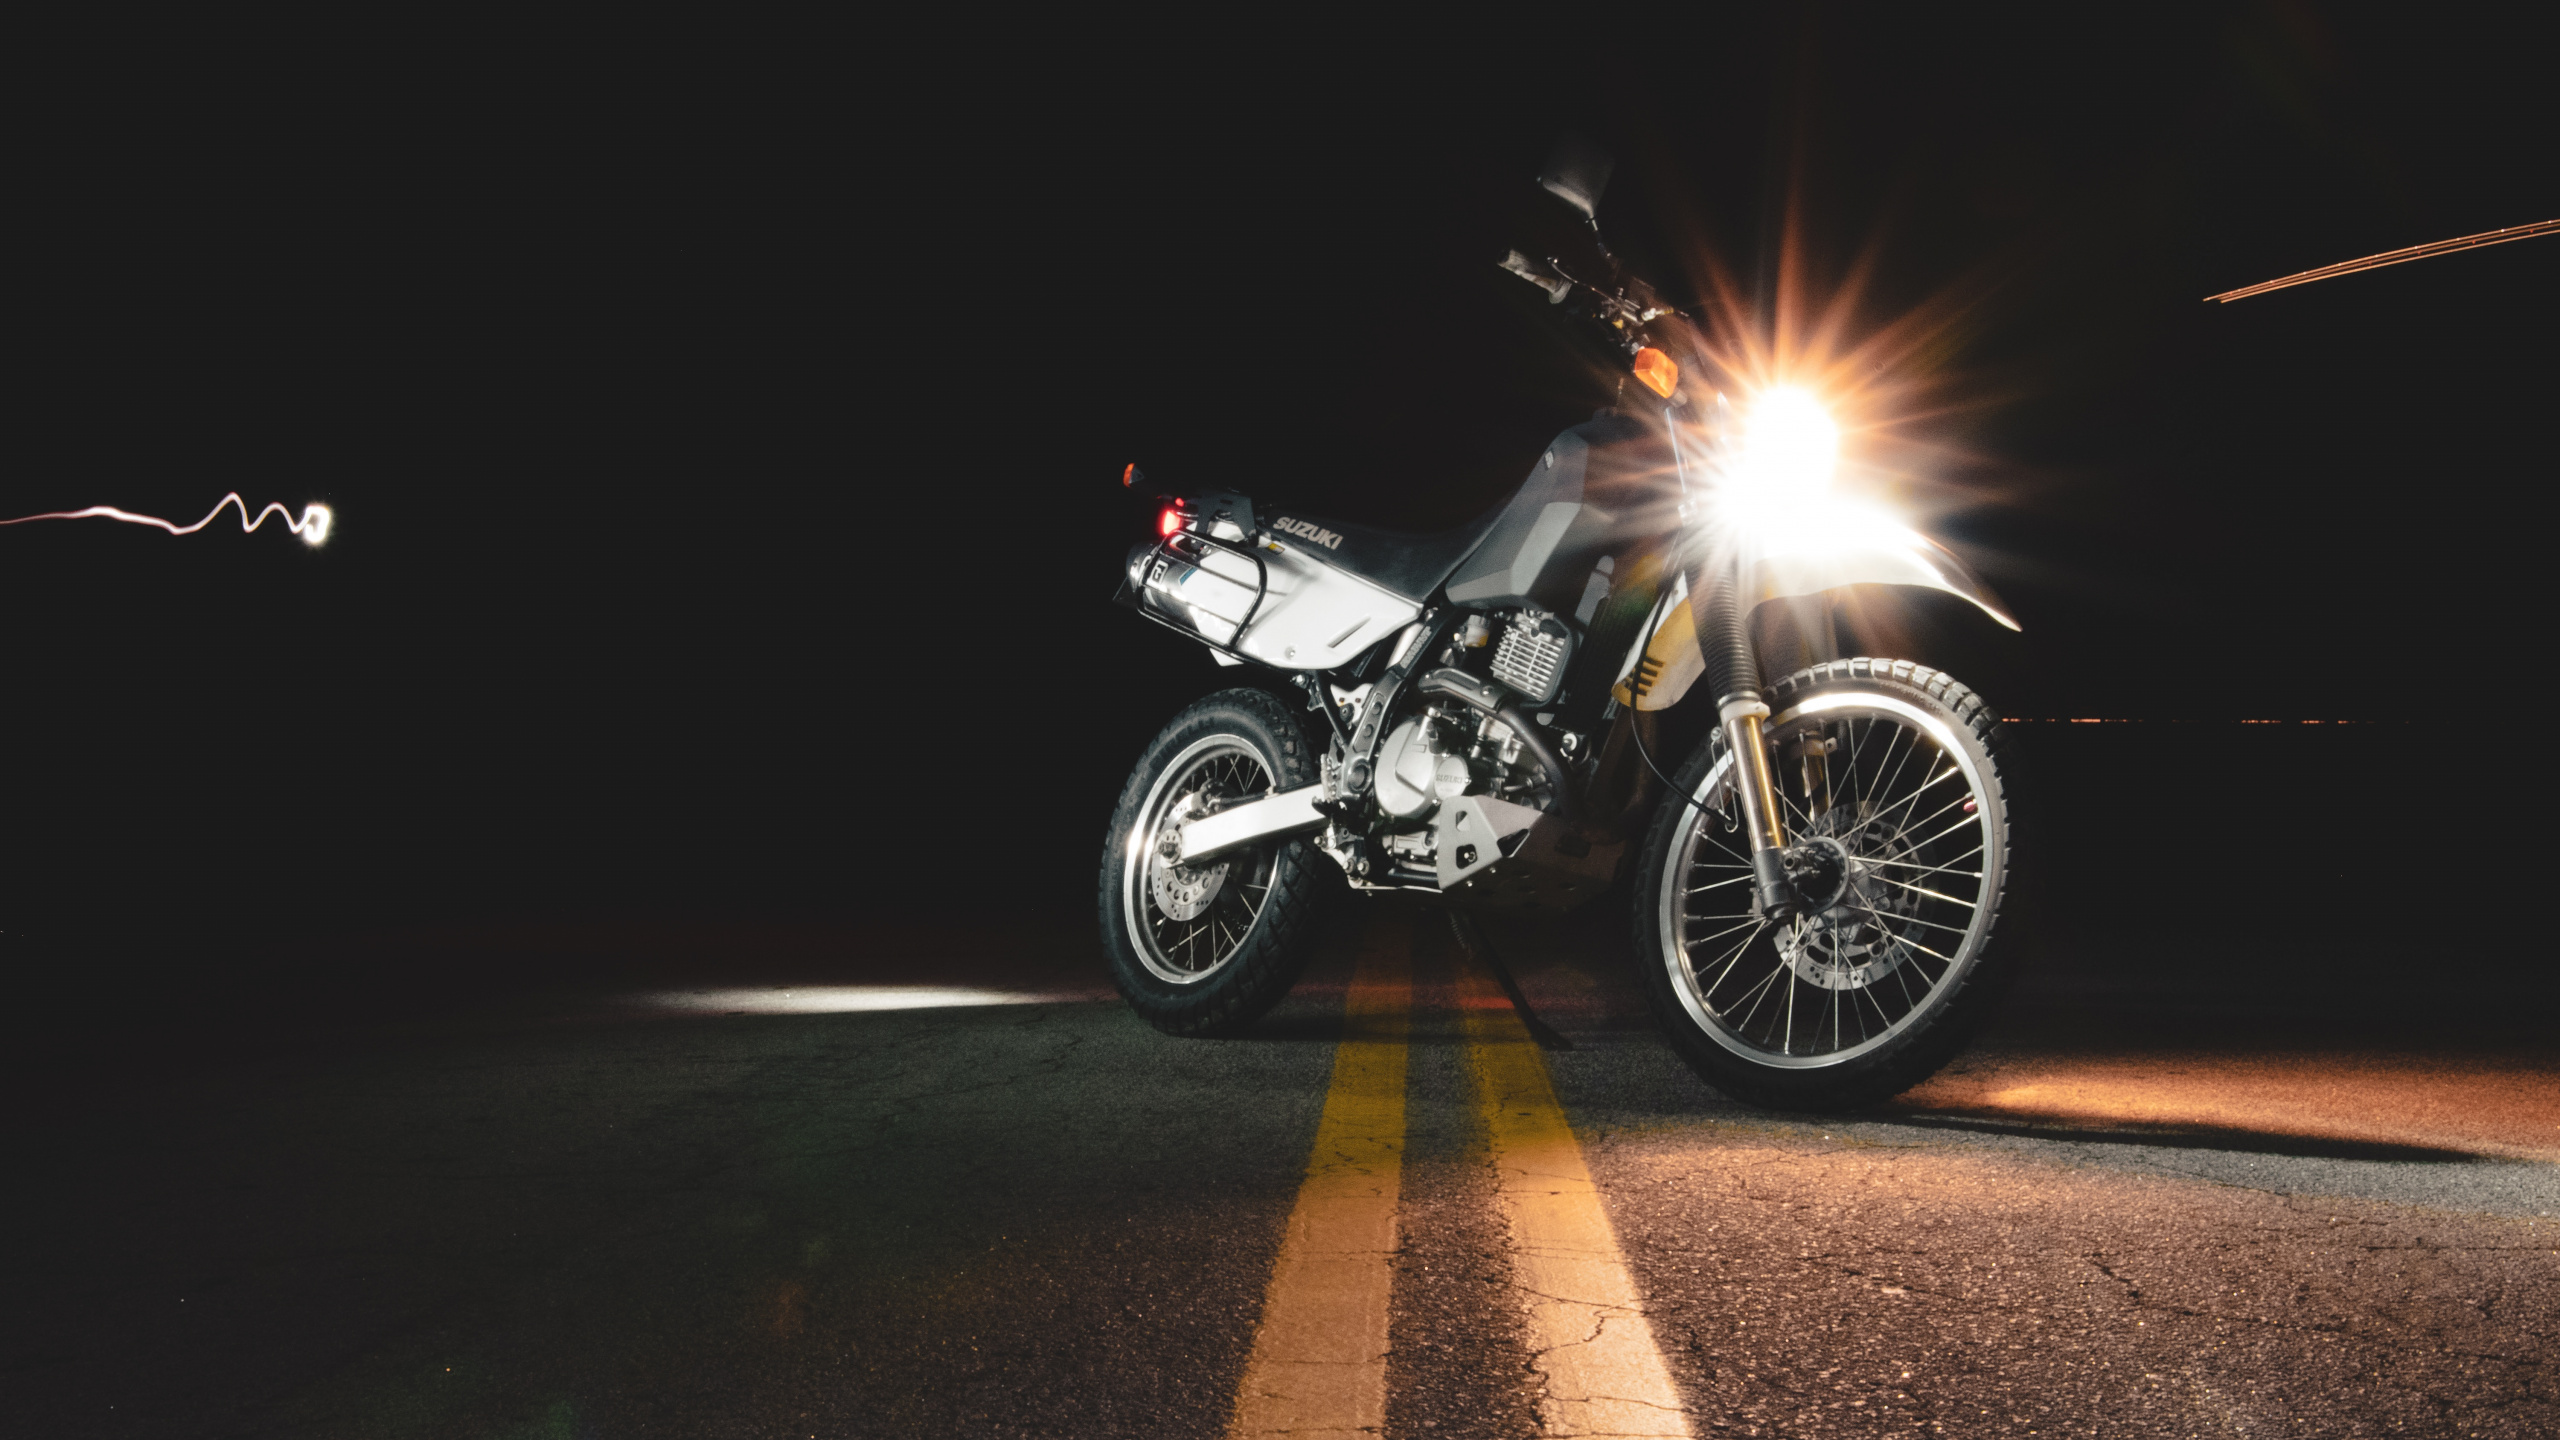 Moto Noir et Argent Sur Route Pendant la Nuit. Wallpaper in 2560x1440 Resolution